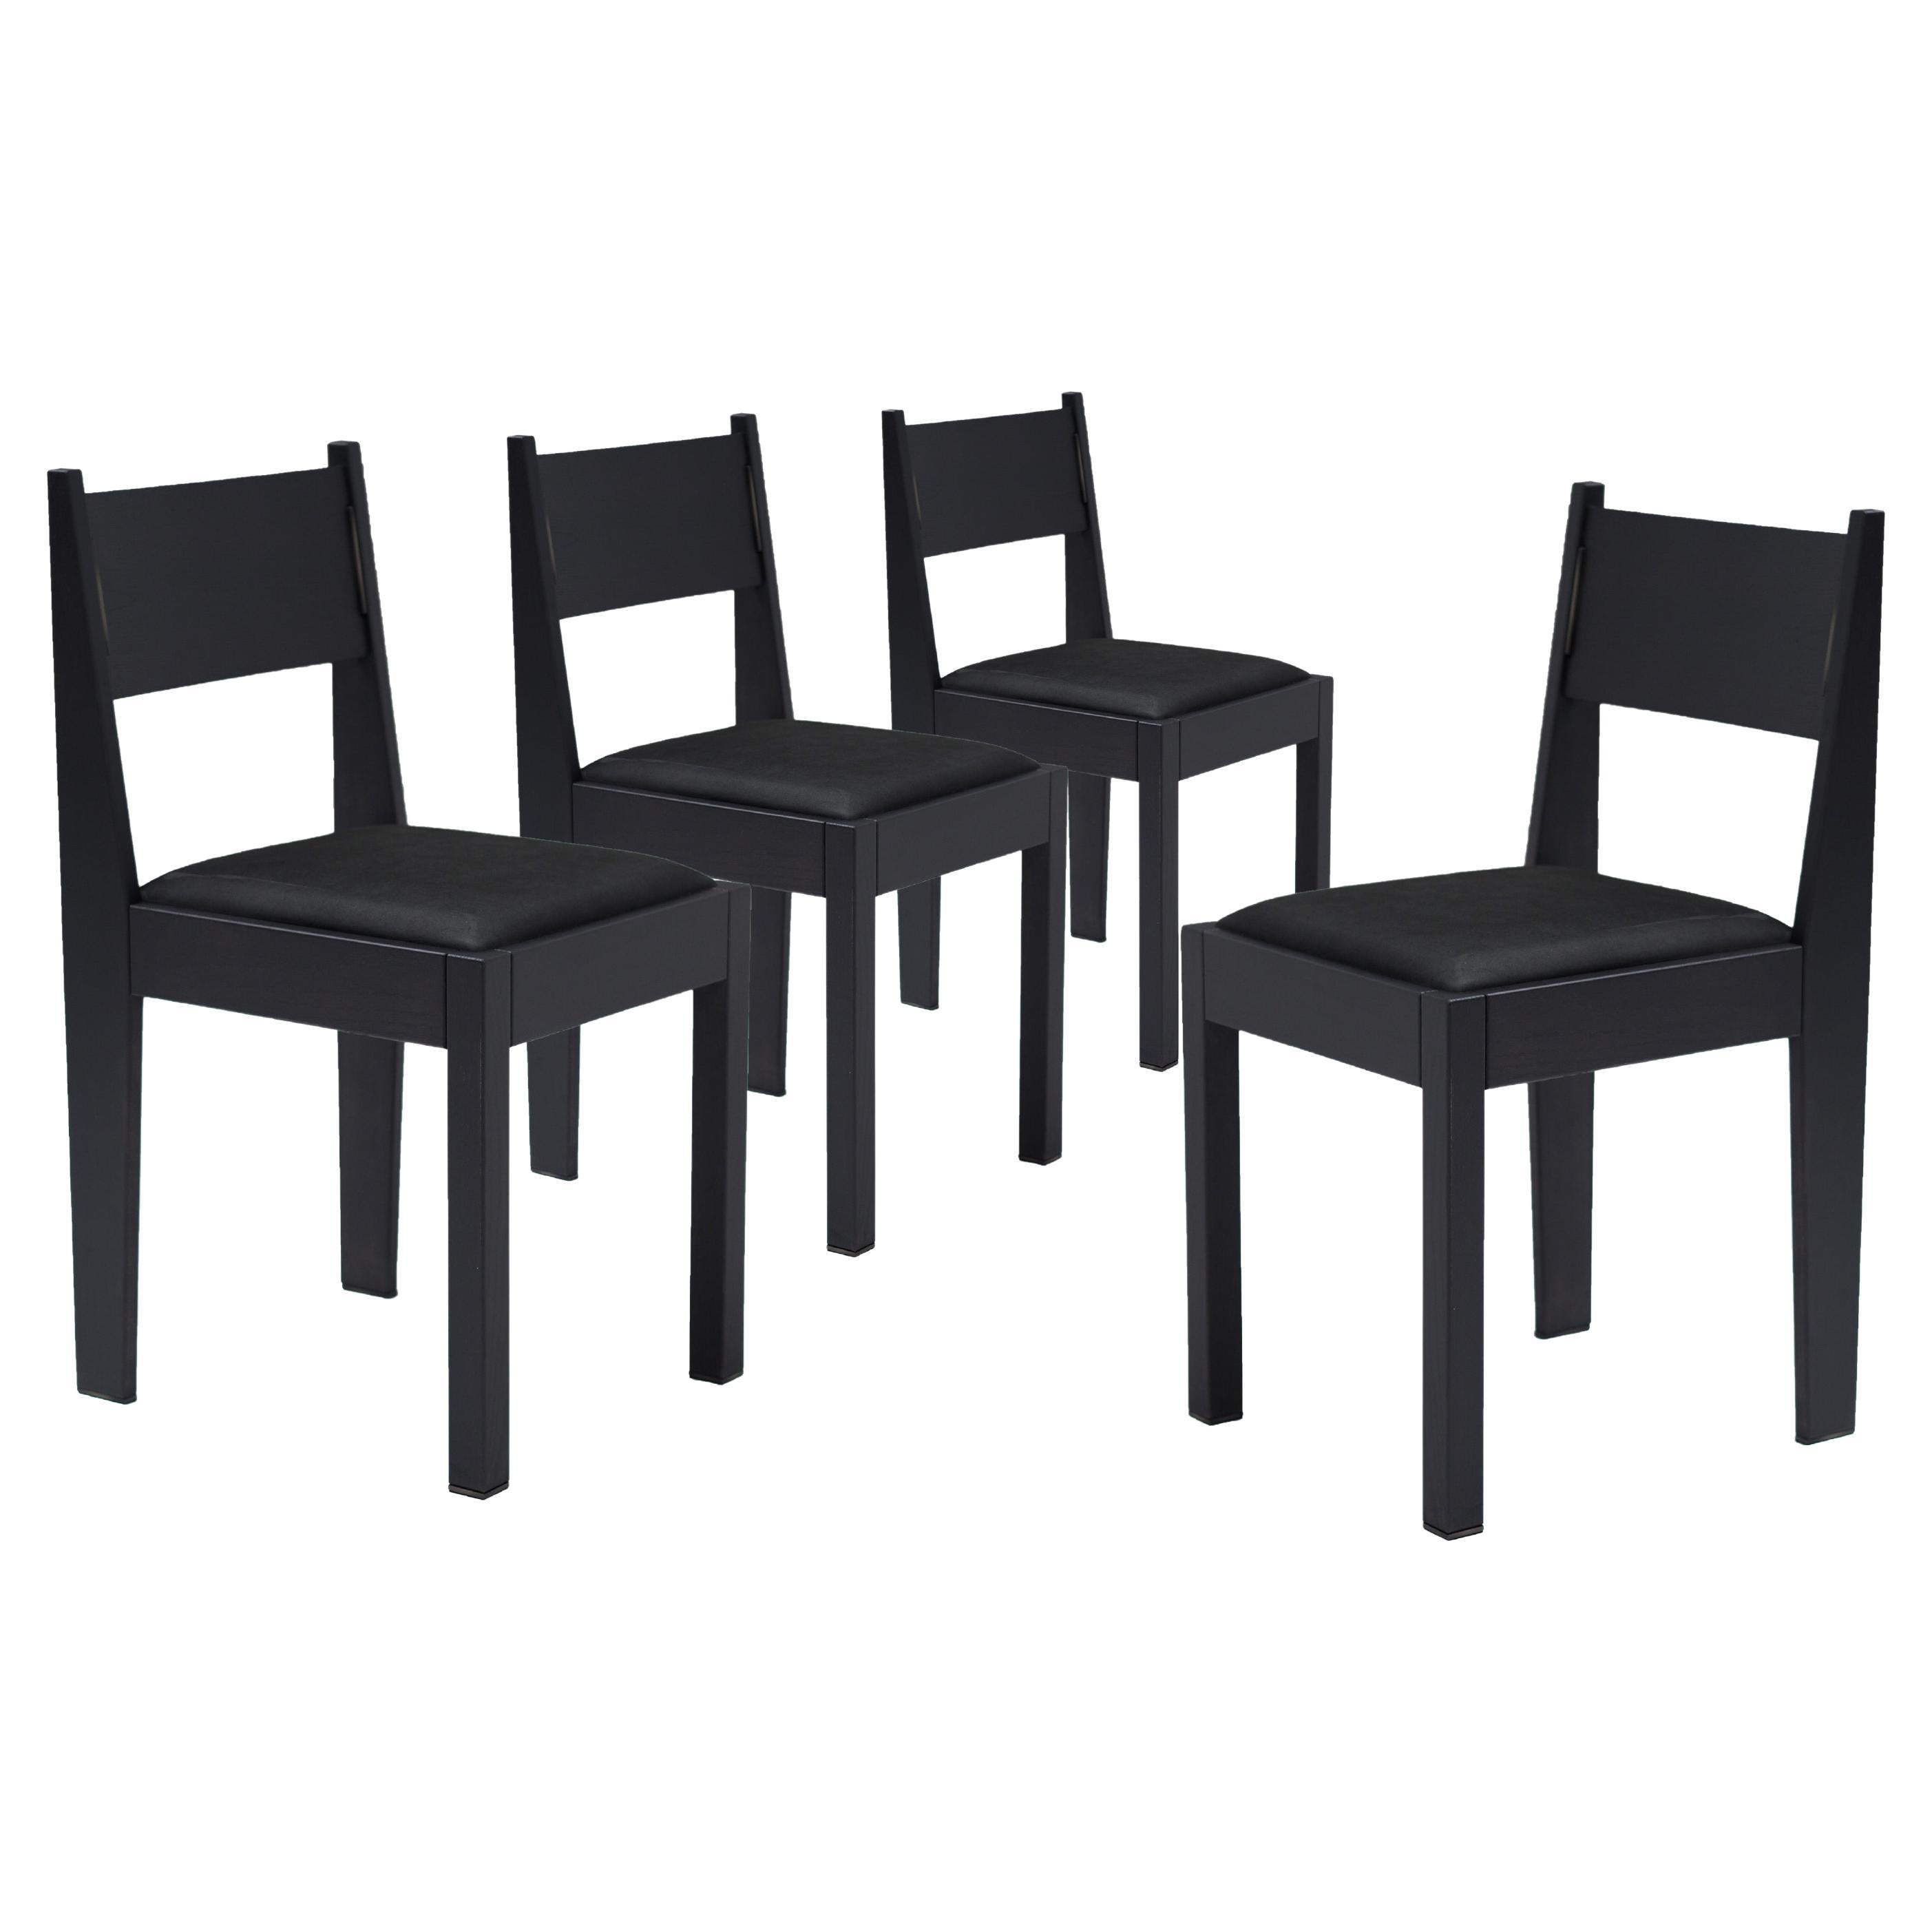 Satz von 4 Art-Déco-Stühlen, schwarzes Eschenholz, Lederpolsterung und Bronzedetails